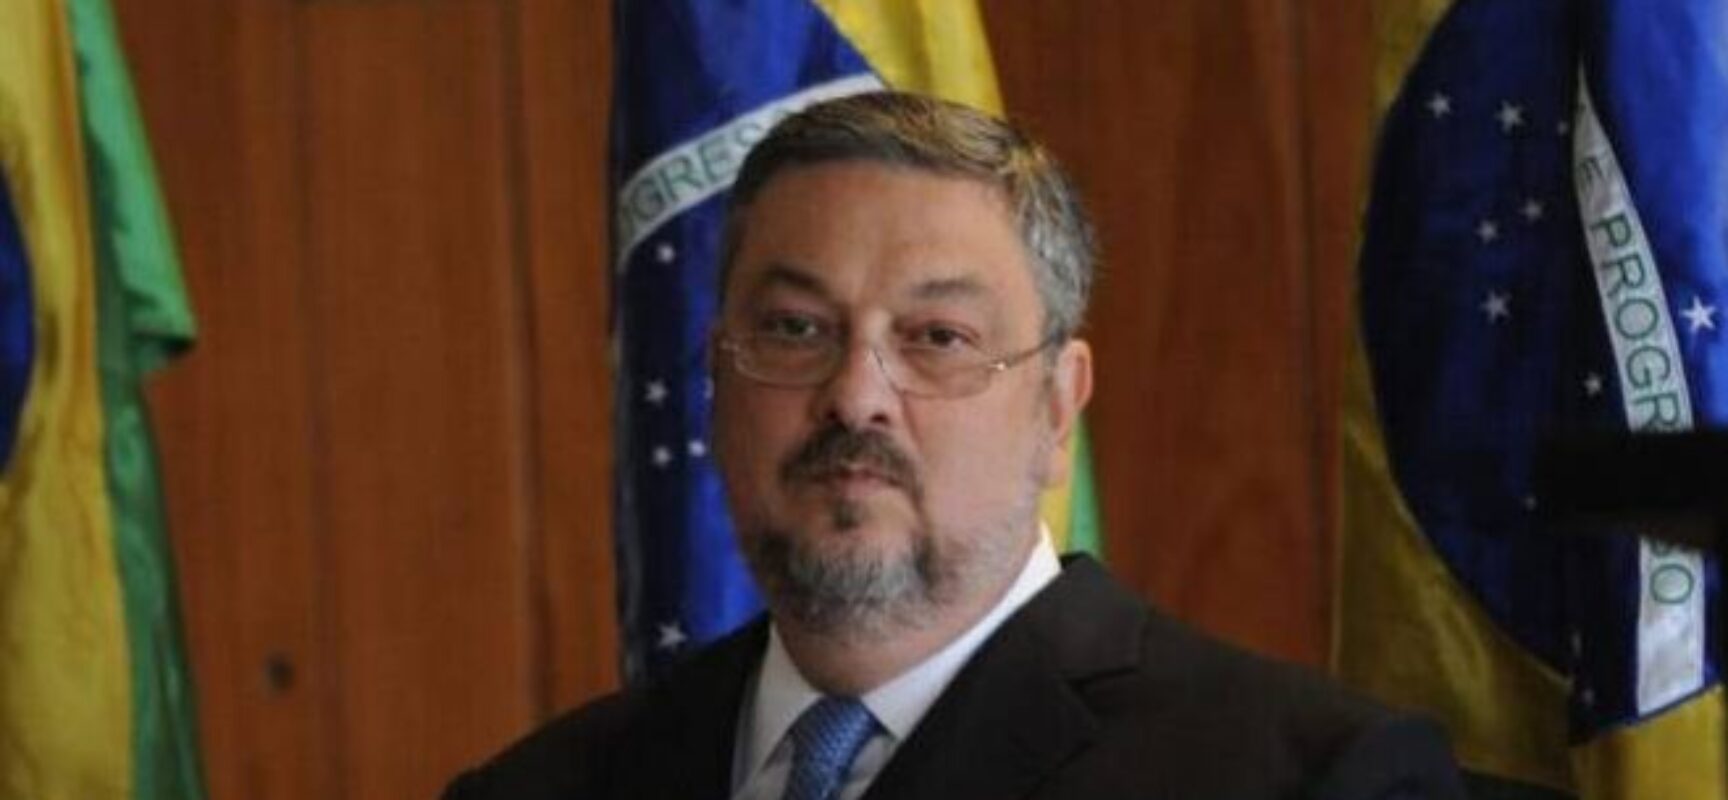 Mercado consulta Palocci ao analisar ações do governo Lula, diz colunista